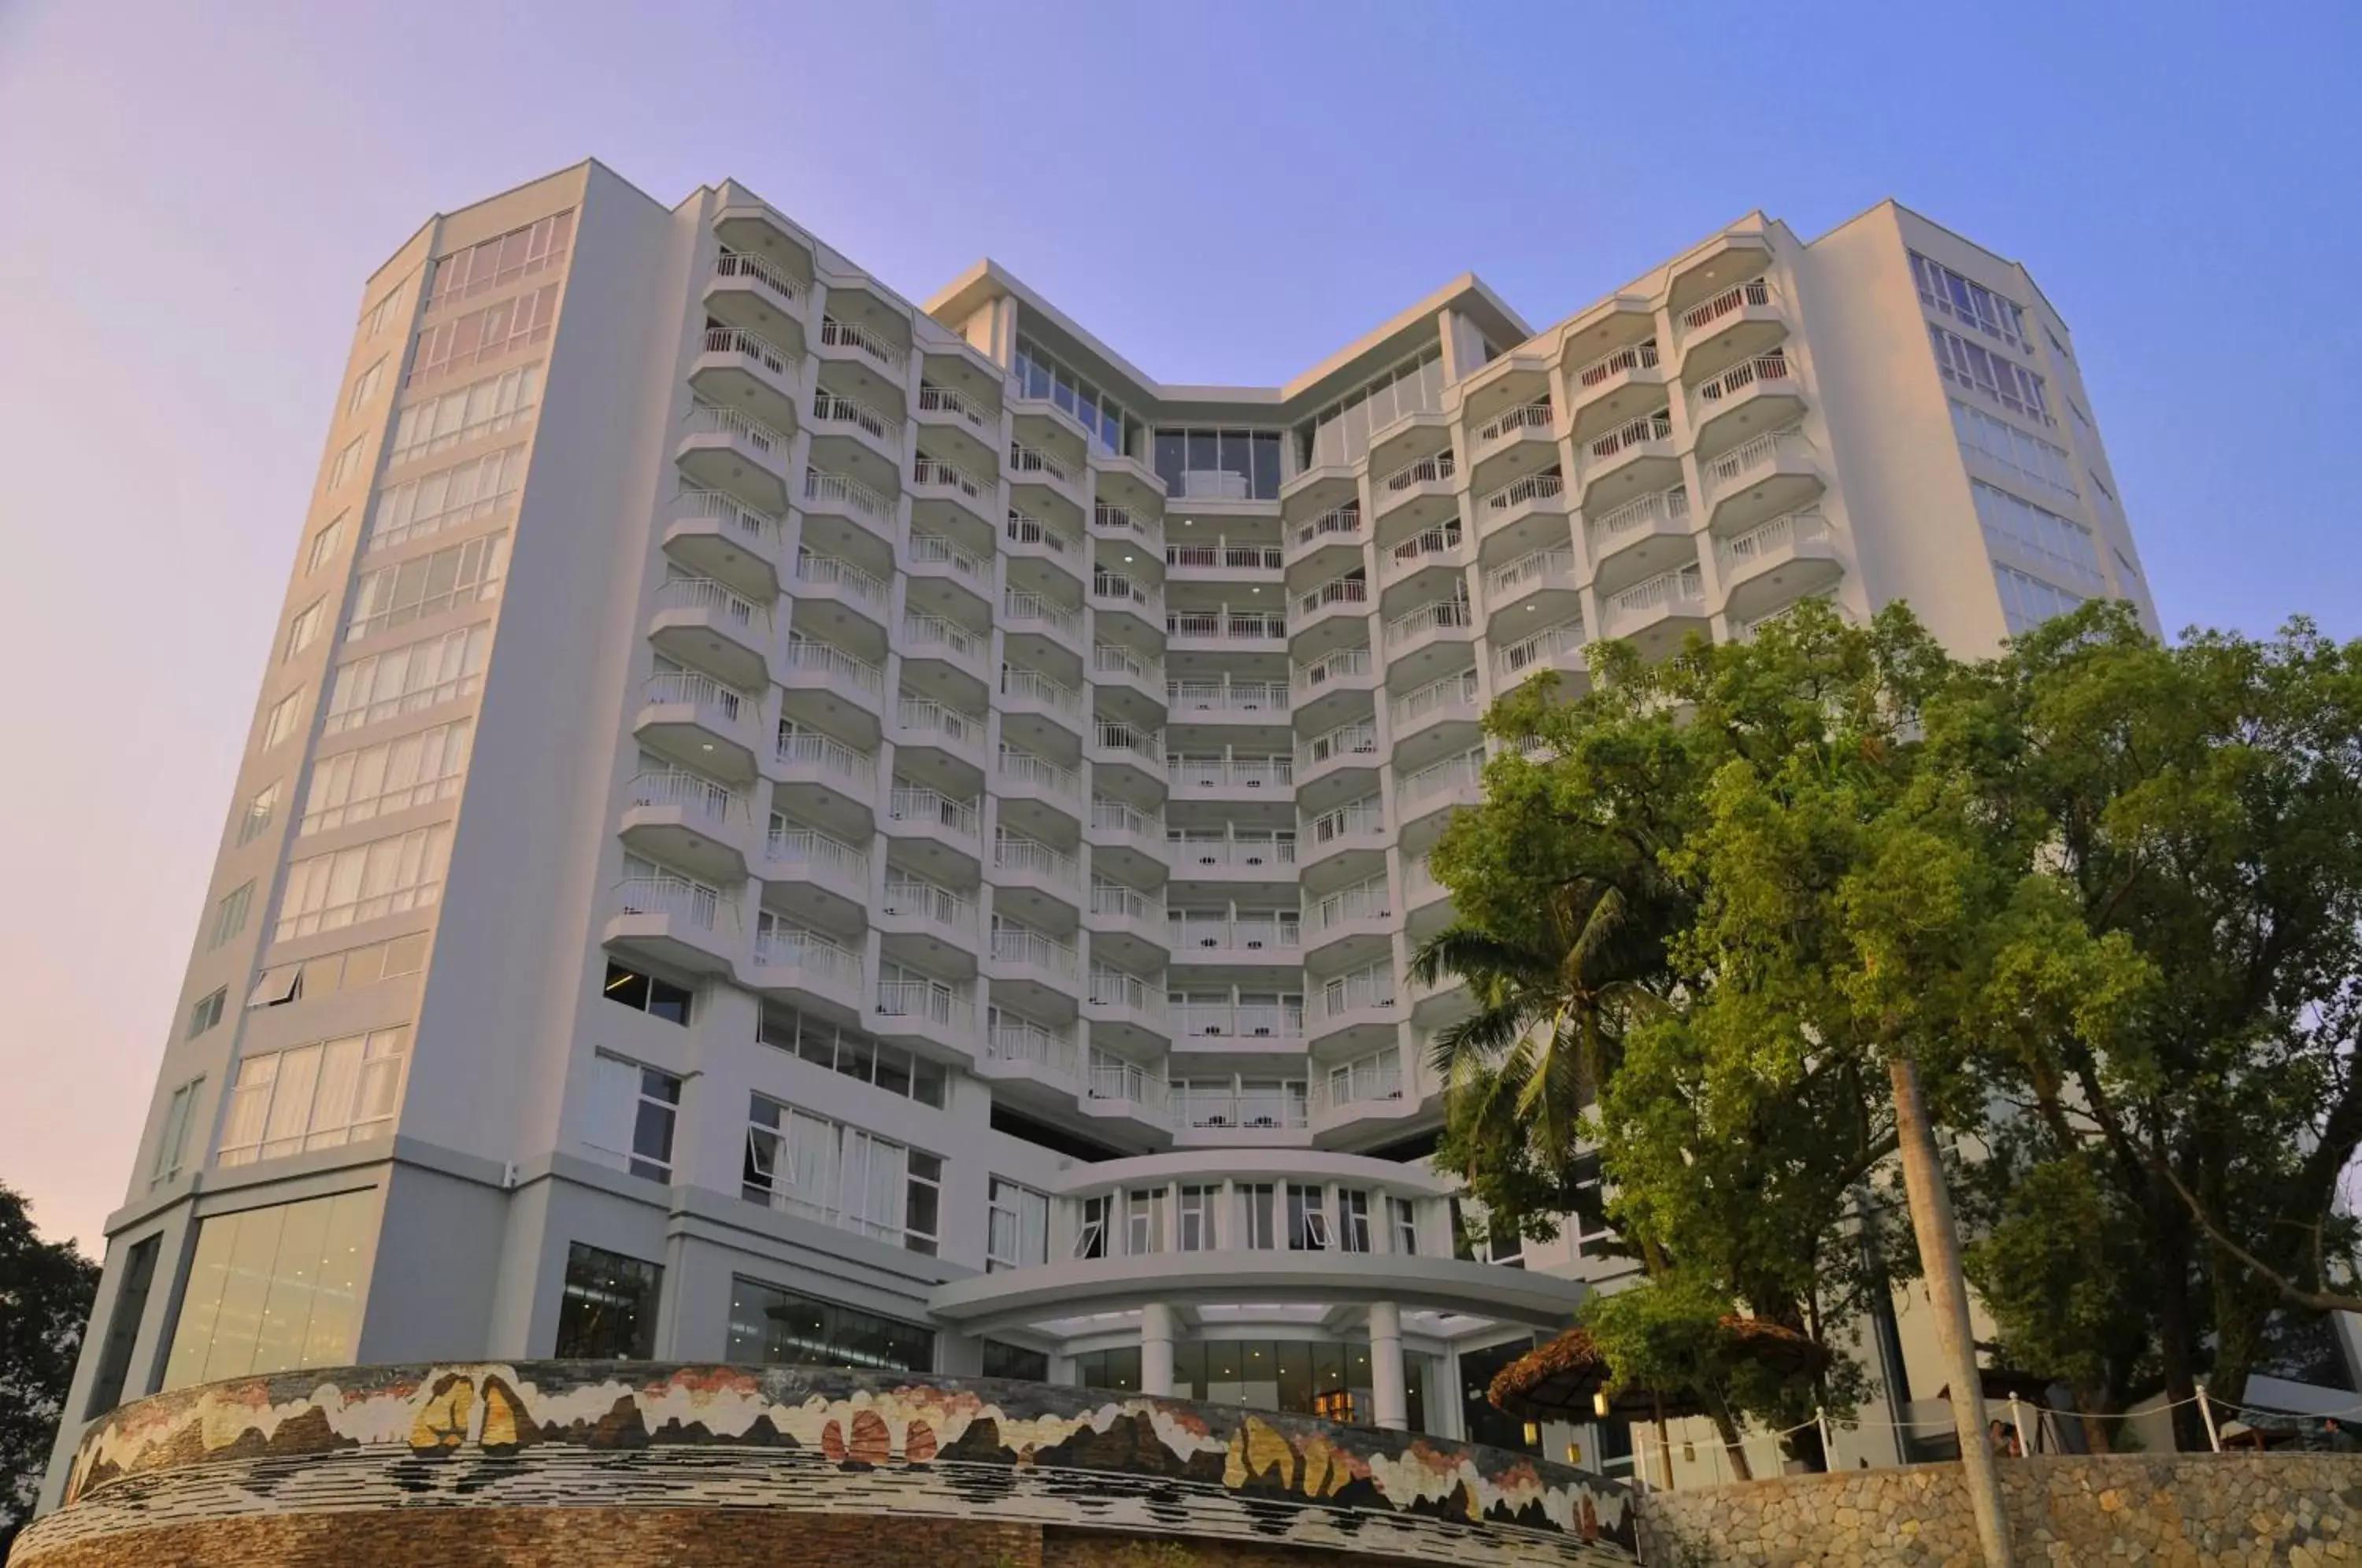 Property Building in Novotel Ha Long Bay Hotel